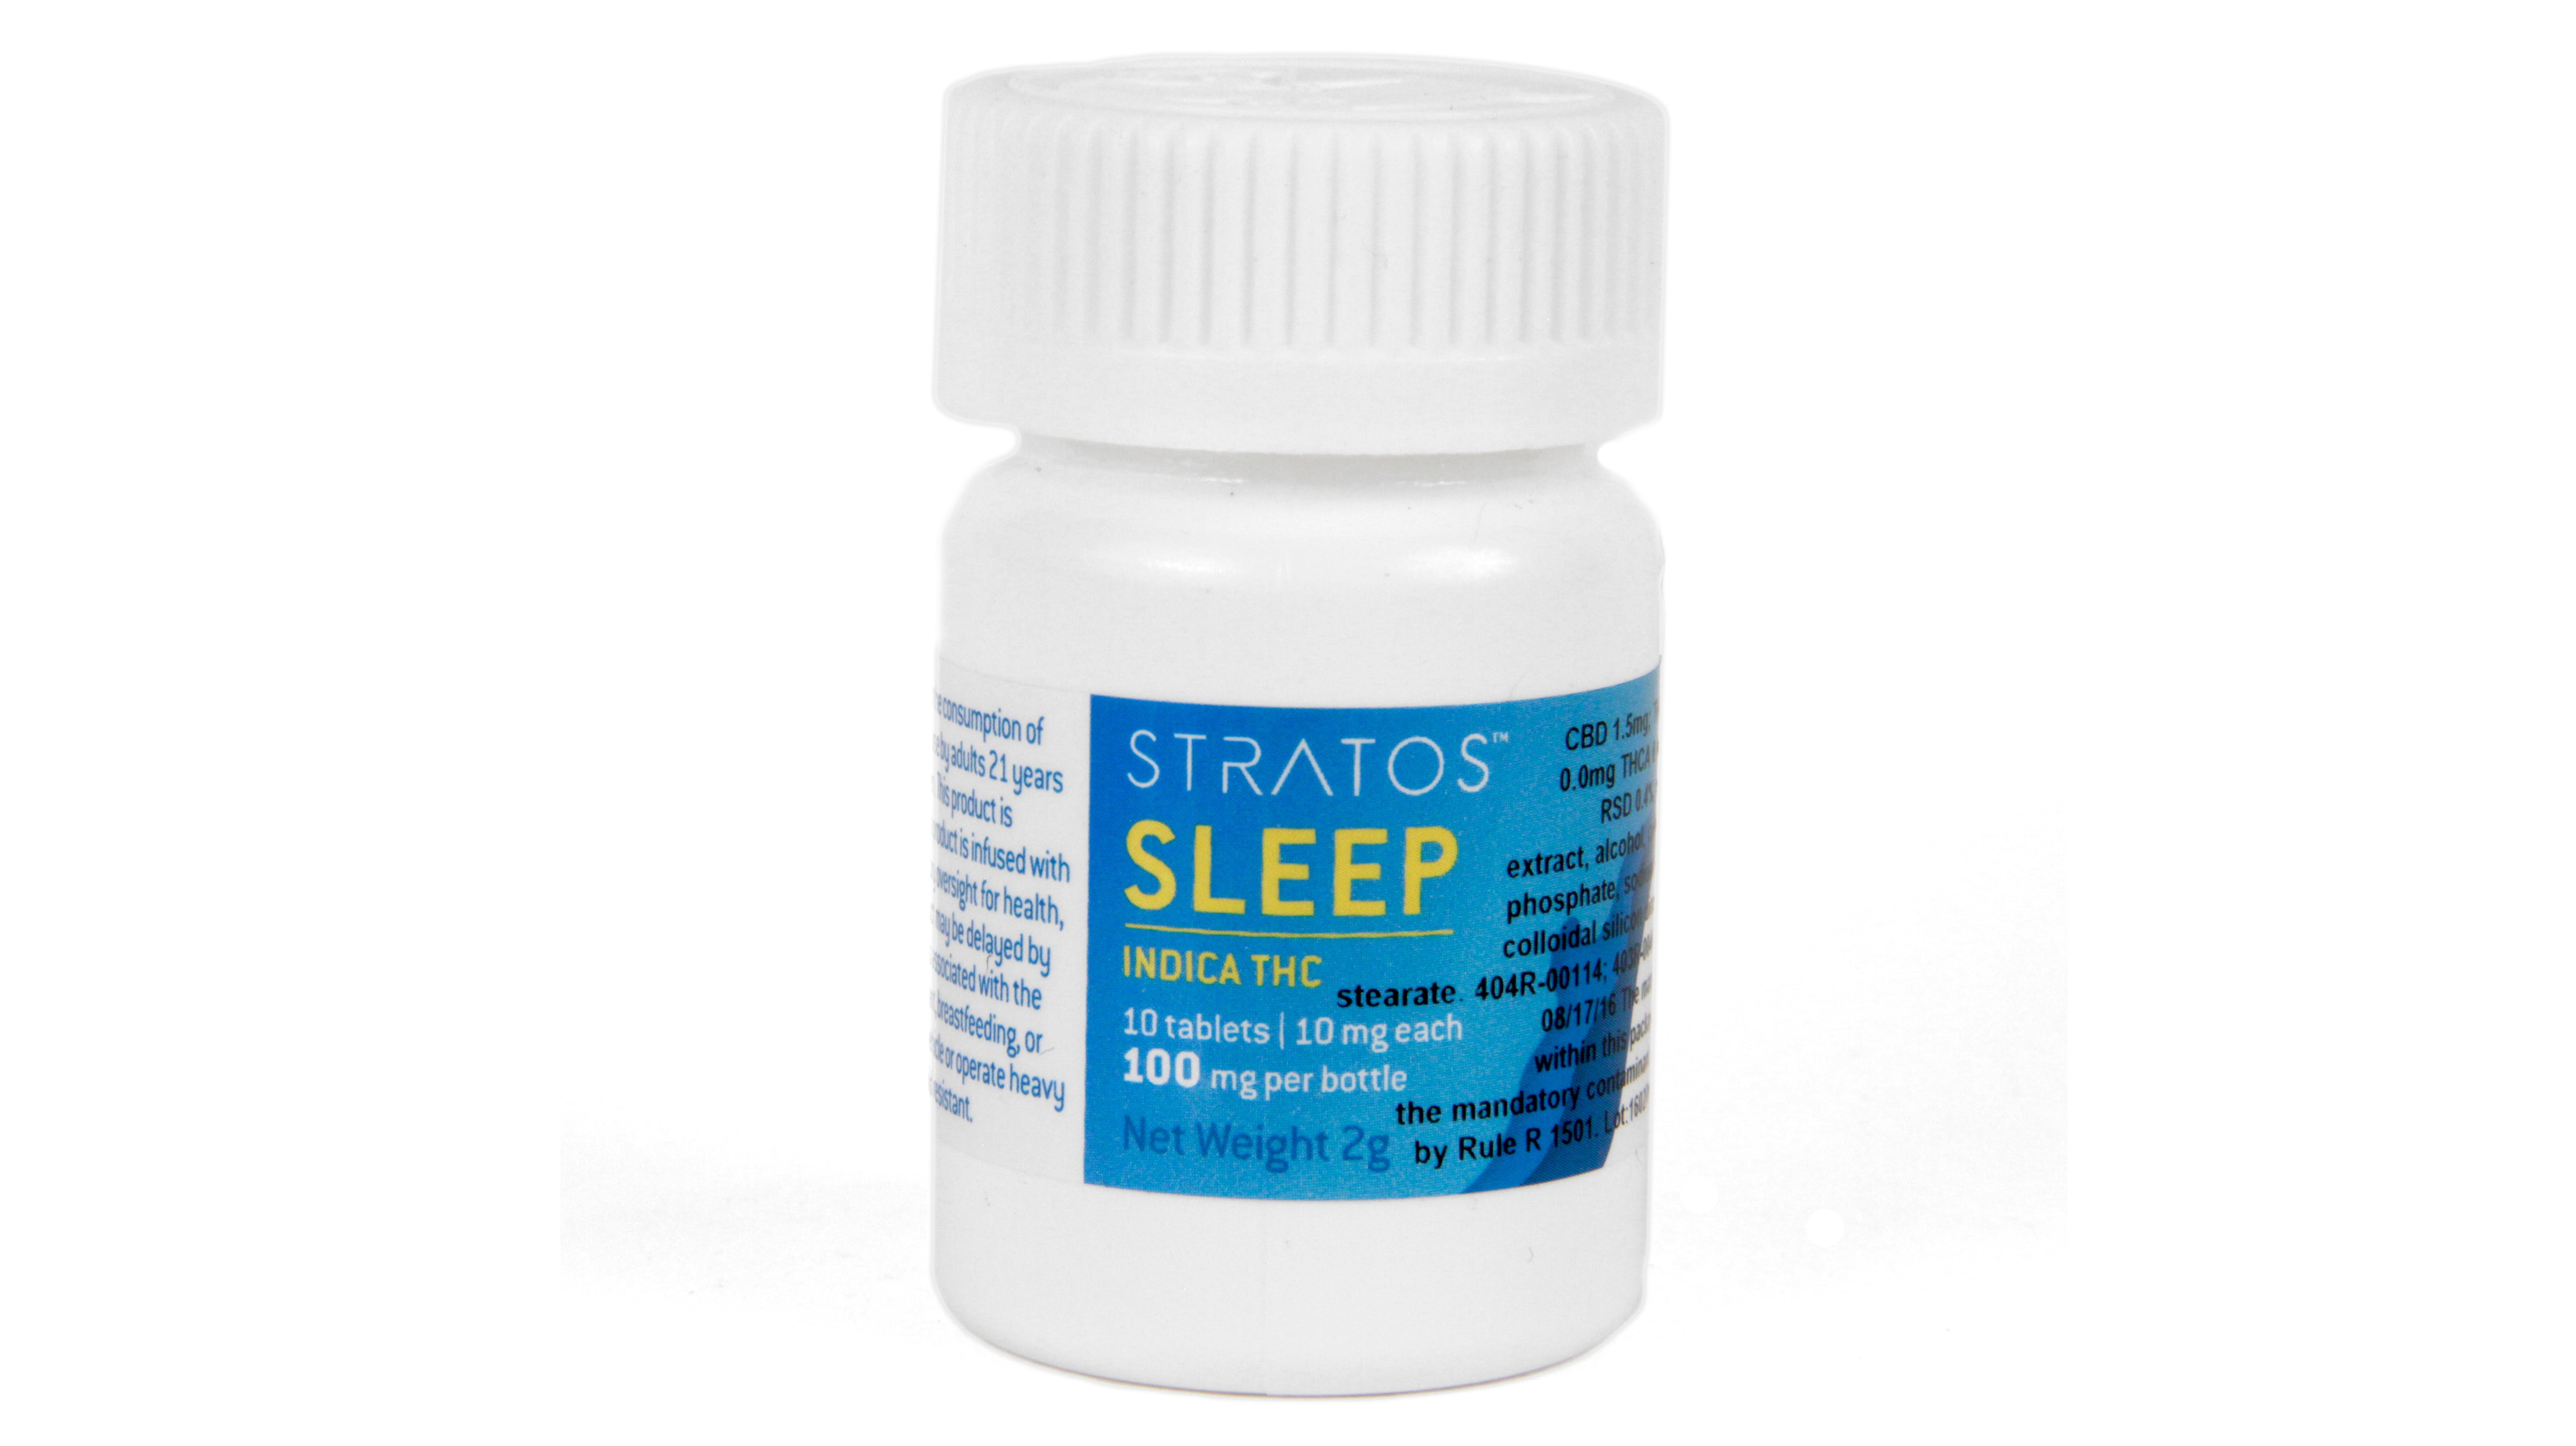 edible-stratos-sleep-tablets-100mg-indica